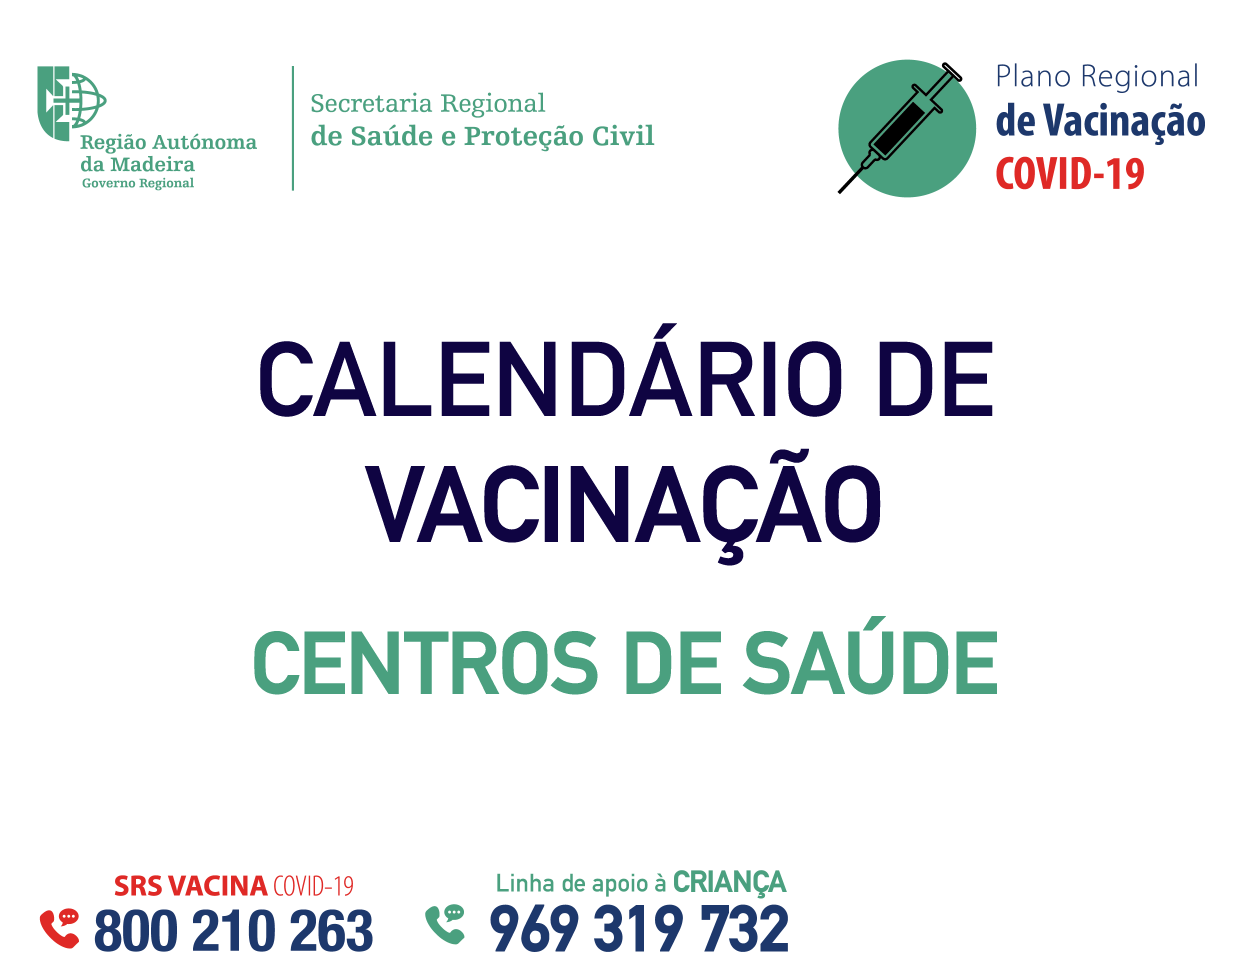 Calendário de Vacinação contra a COVID-19 nos Centros de Saúde